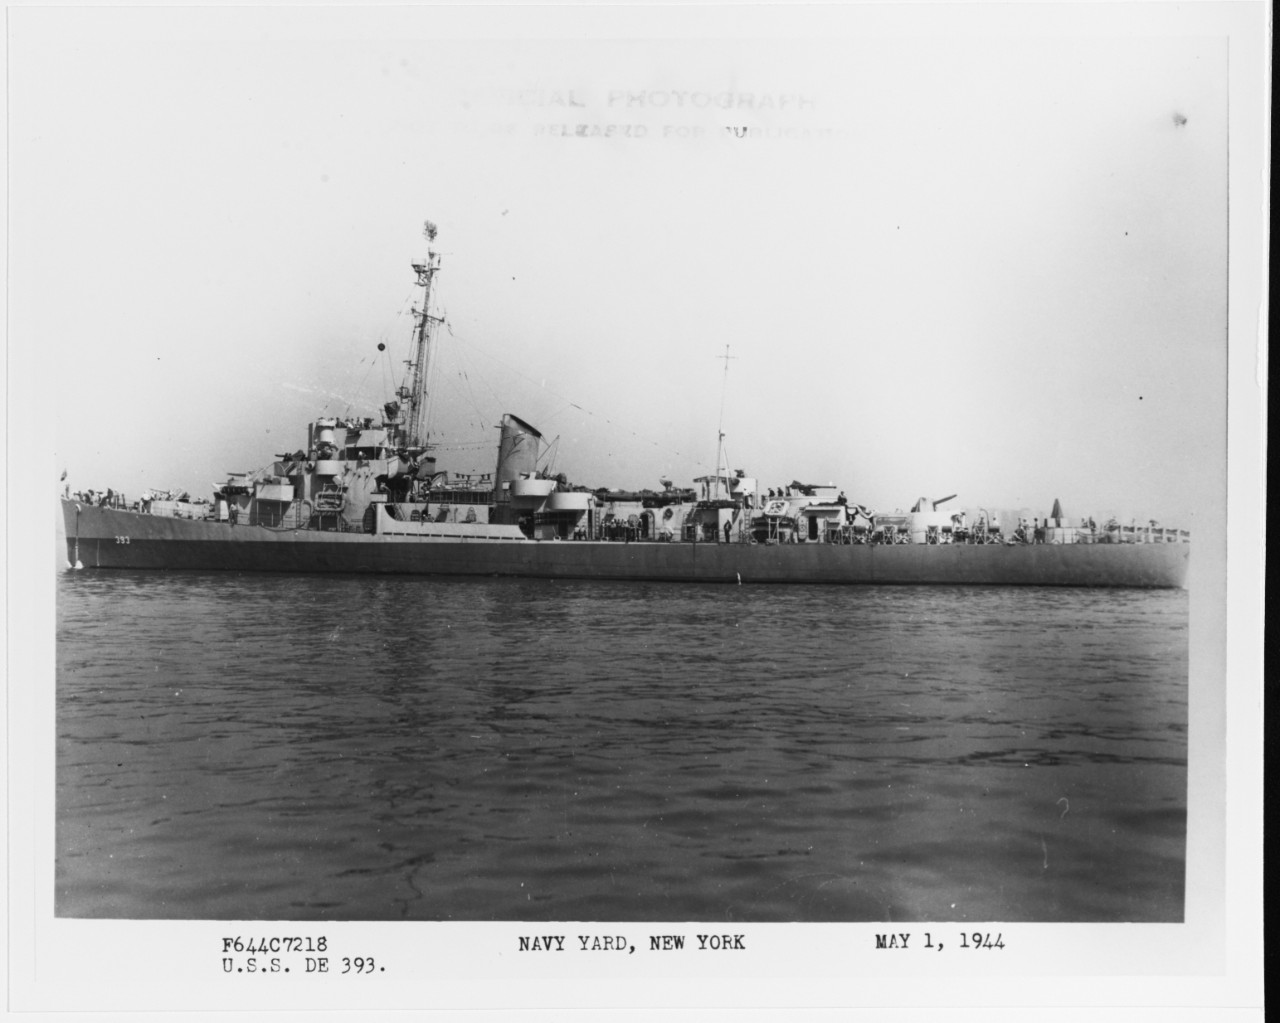 USS HAVERFIELD (DE-393)